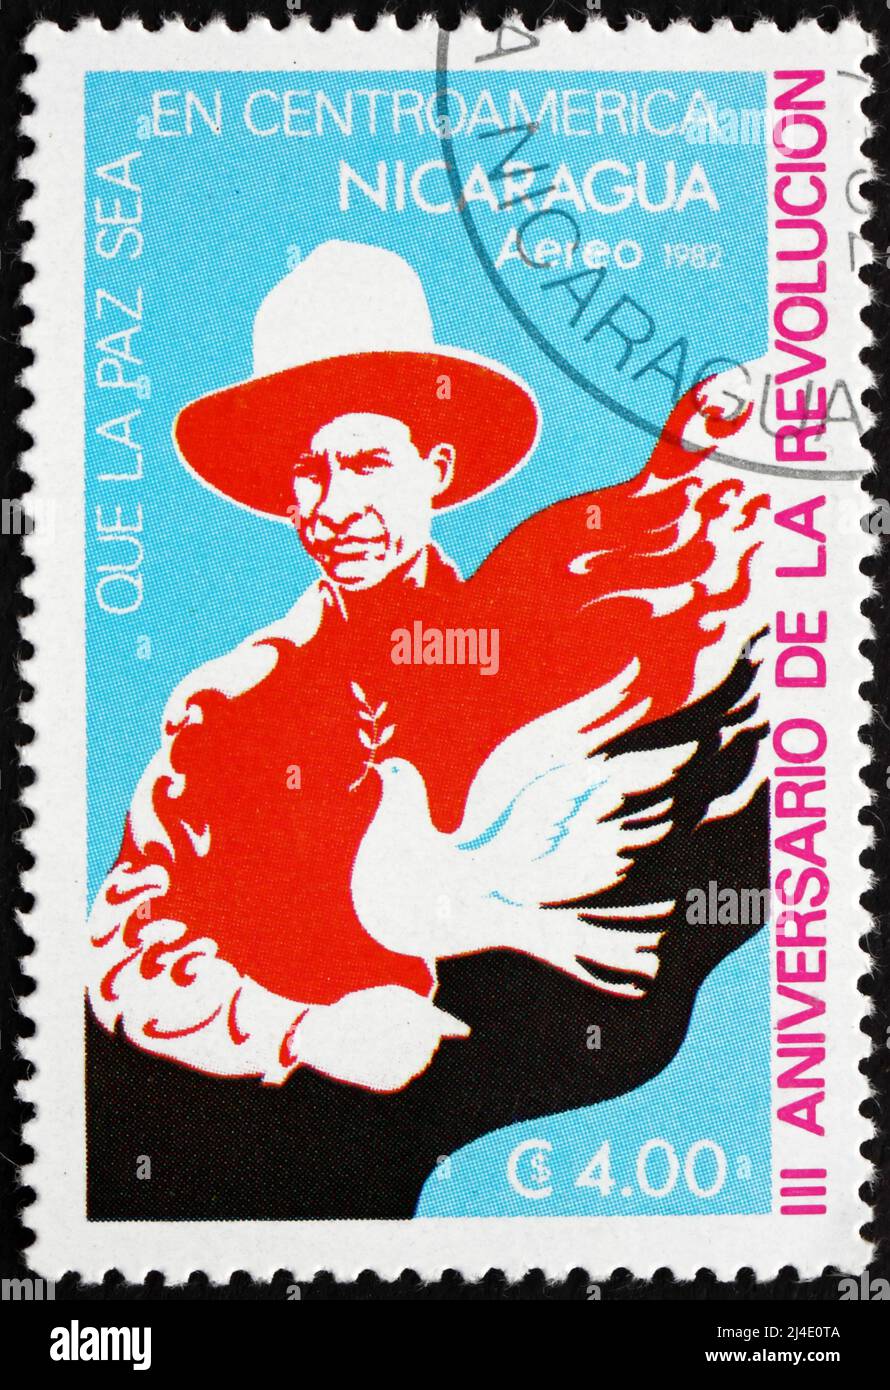 NICARAGUA - ALREDEDOR de 1982: Un sello impreso en Nicaragua muestra la Paloma Simbólica, 3rd Aniversario de la Revolución, alrededor de 1982 Foto de stock